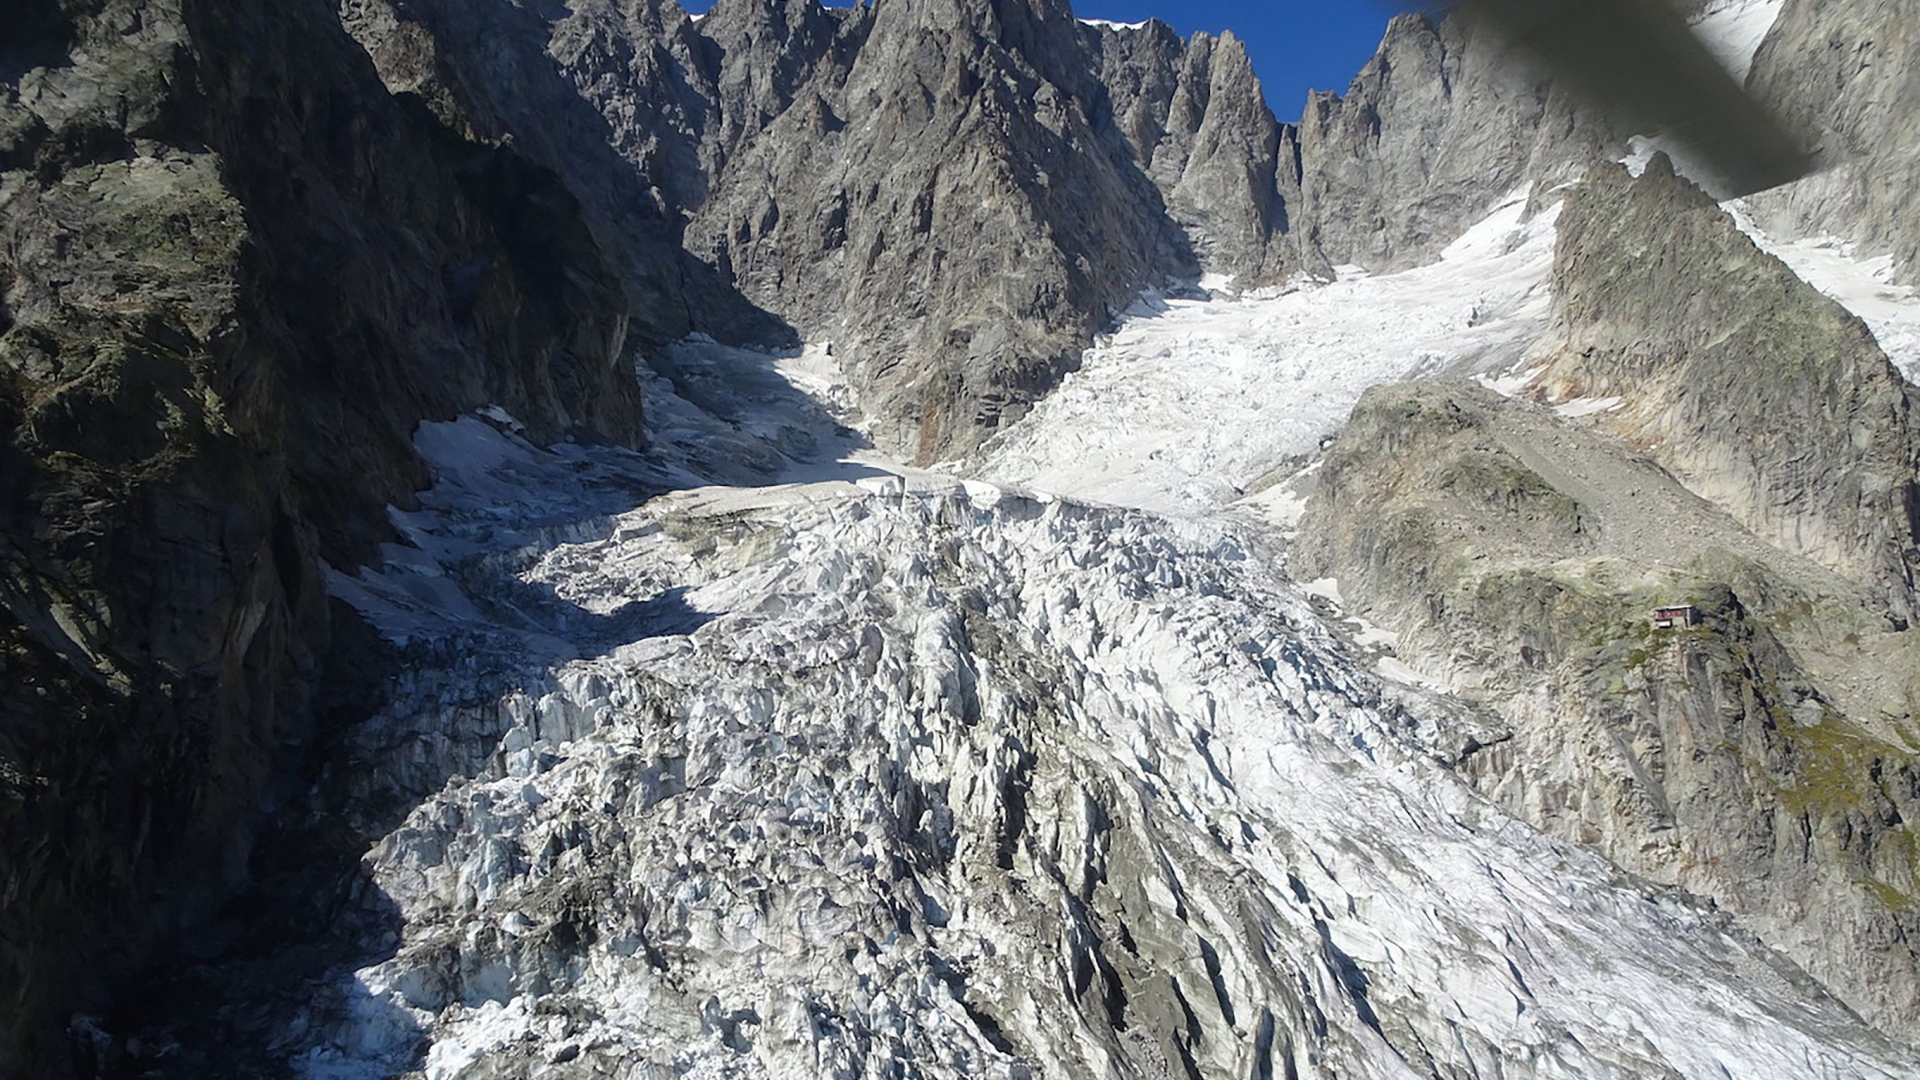 Schmelzender Gletscher auf dem Montblanc